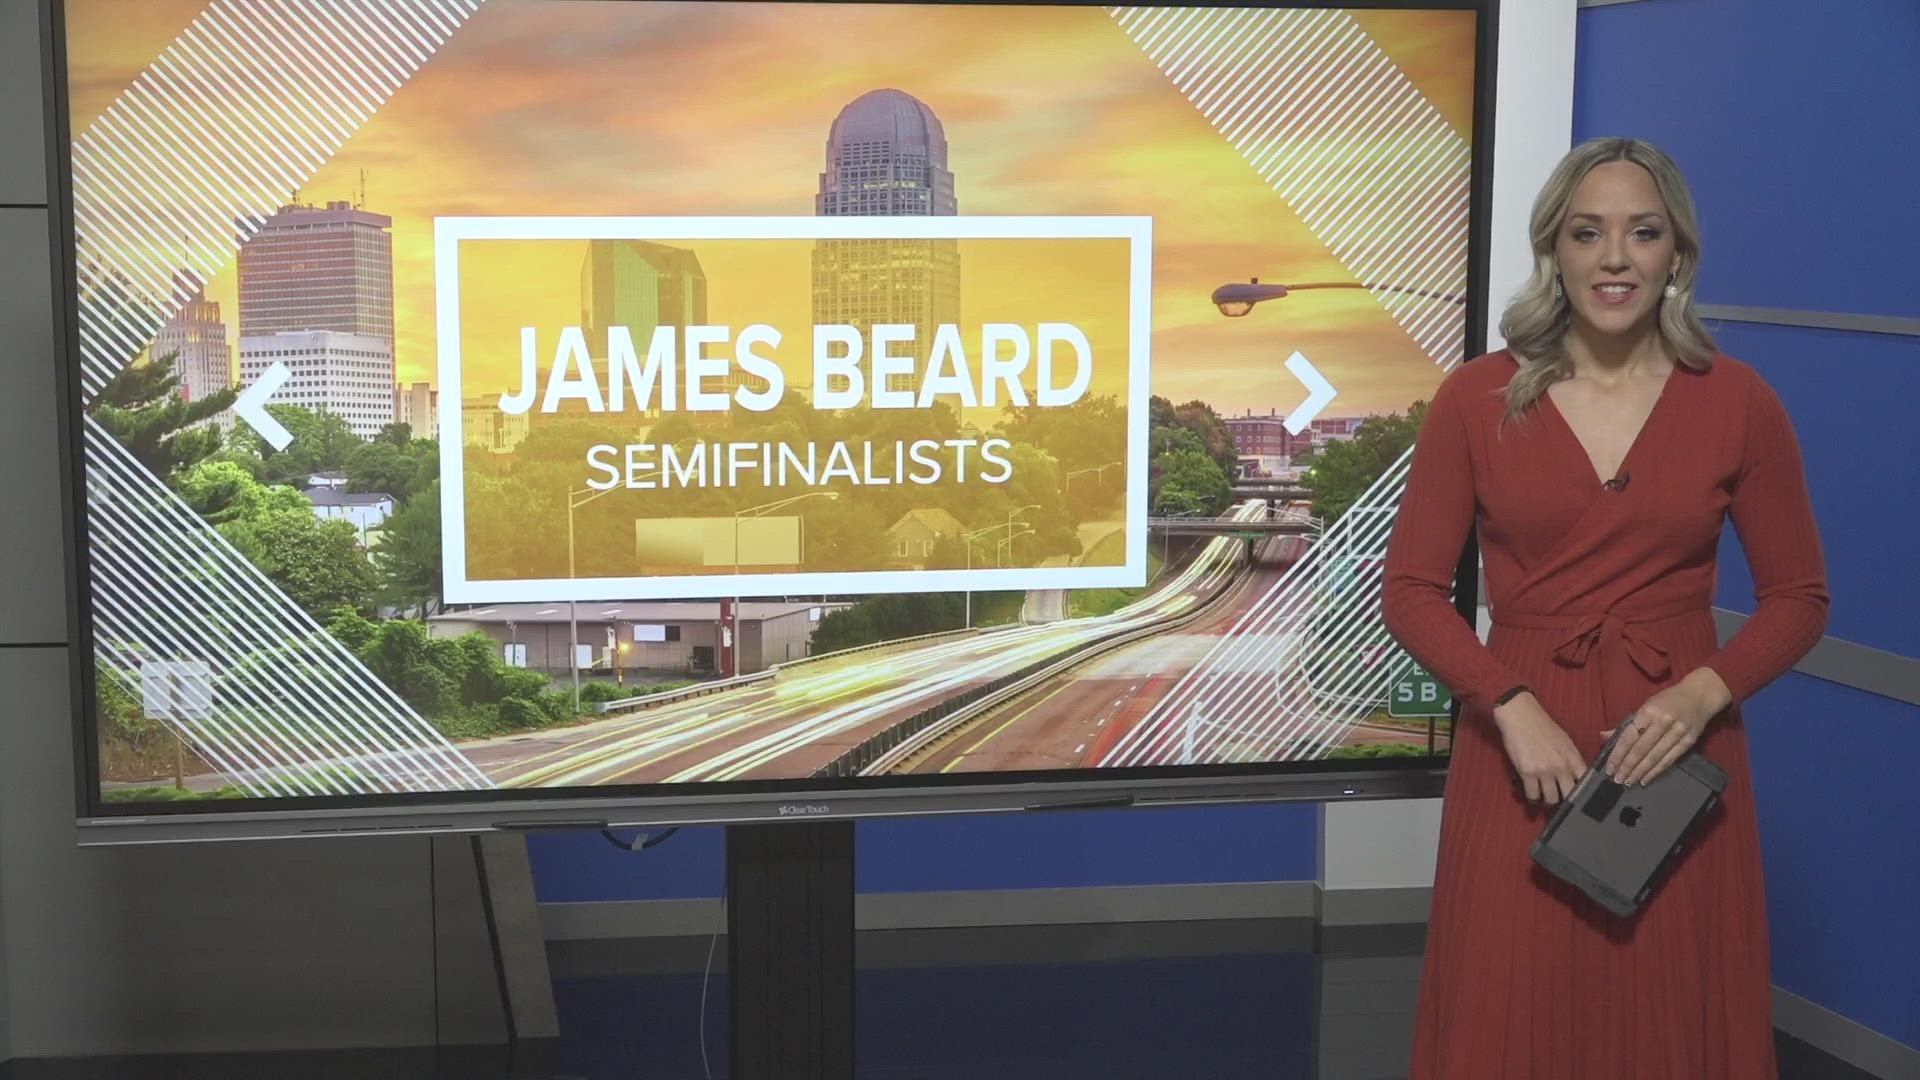 Meet the 2 Winston-Salem semifinalists up for a James Beard award